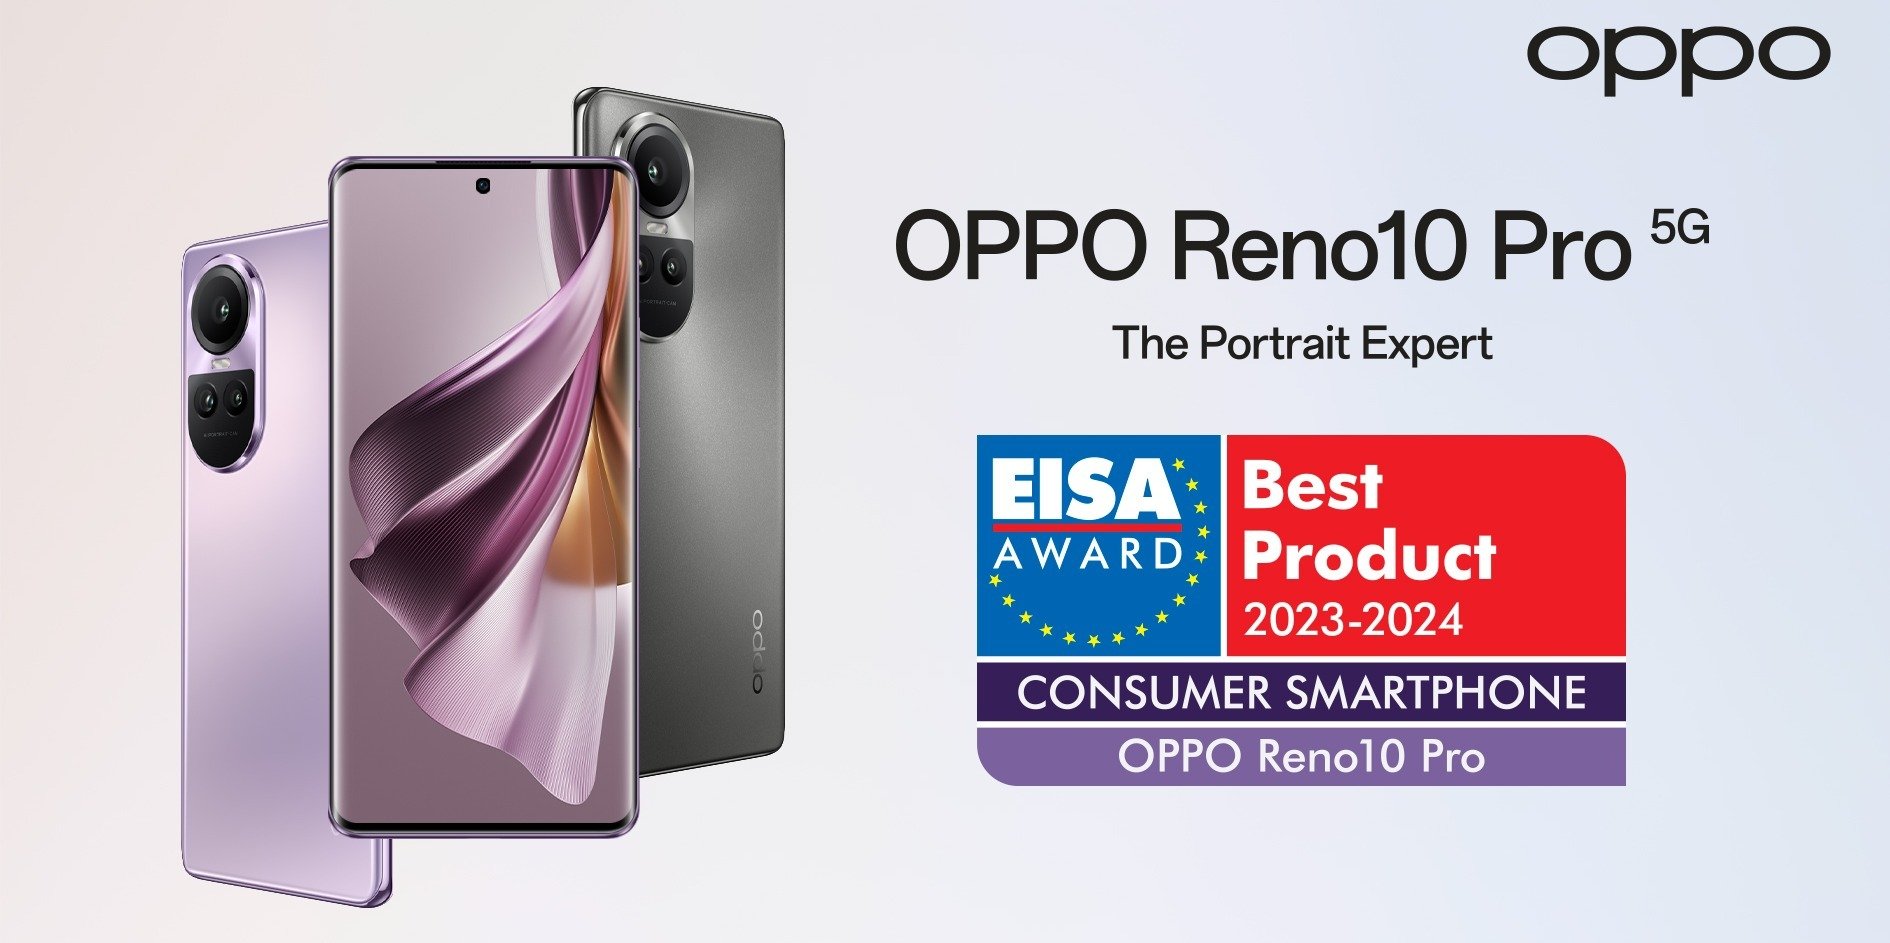 OPPO Reno10 Pro 5G najlepszym smartfonem konsumenckim – smartfon OPPO wyróżniony przez EISA